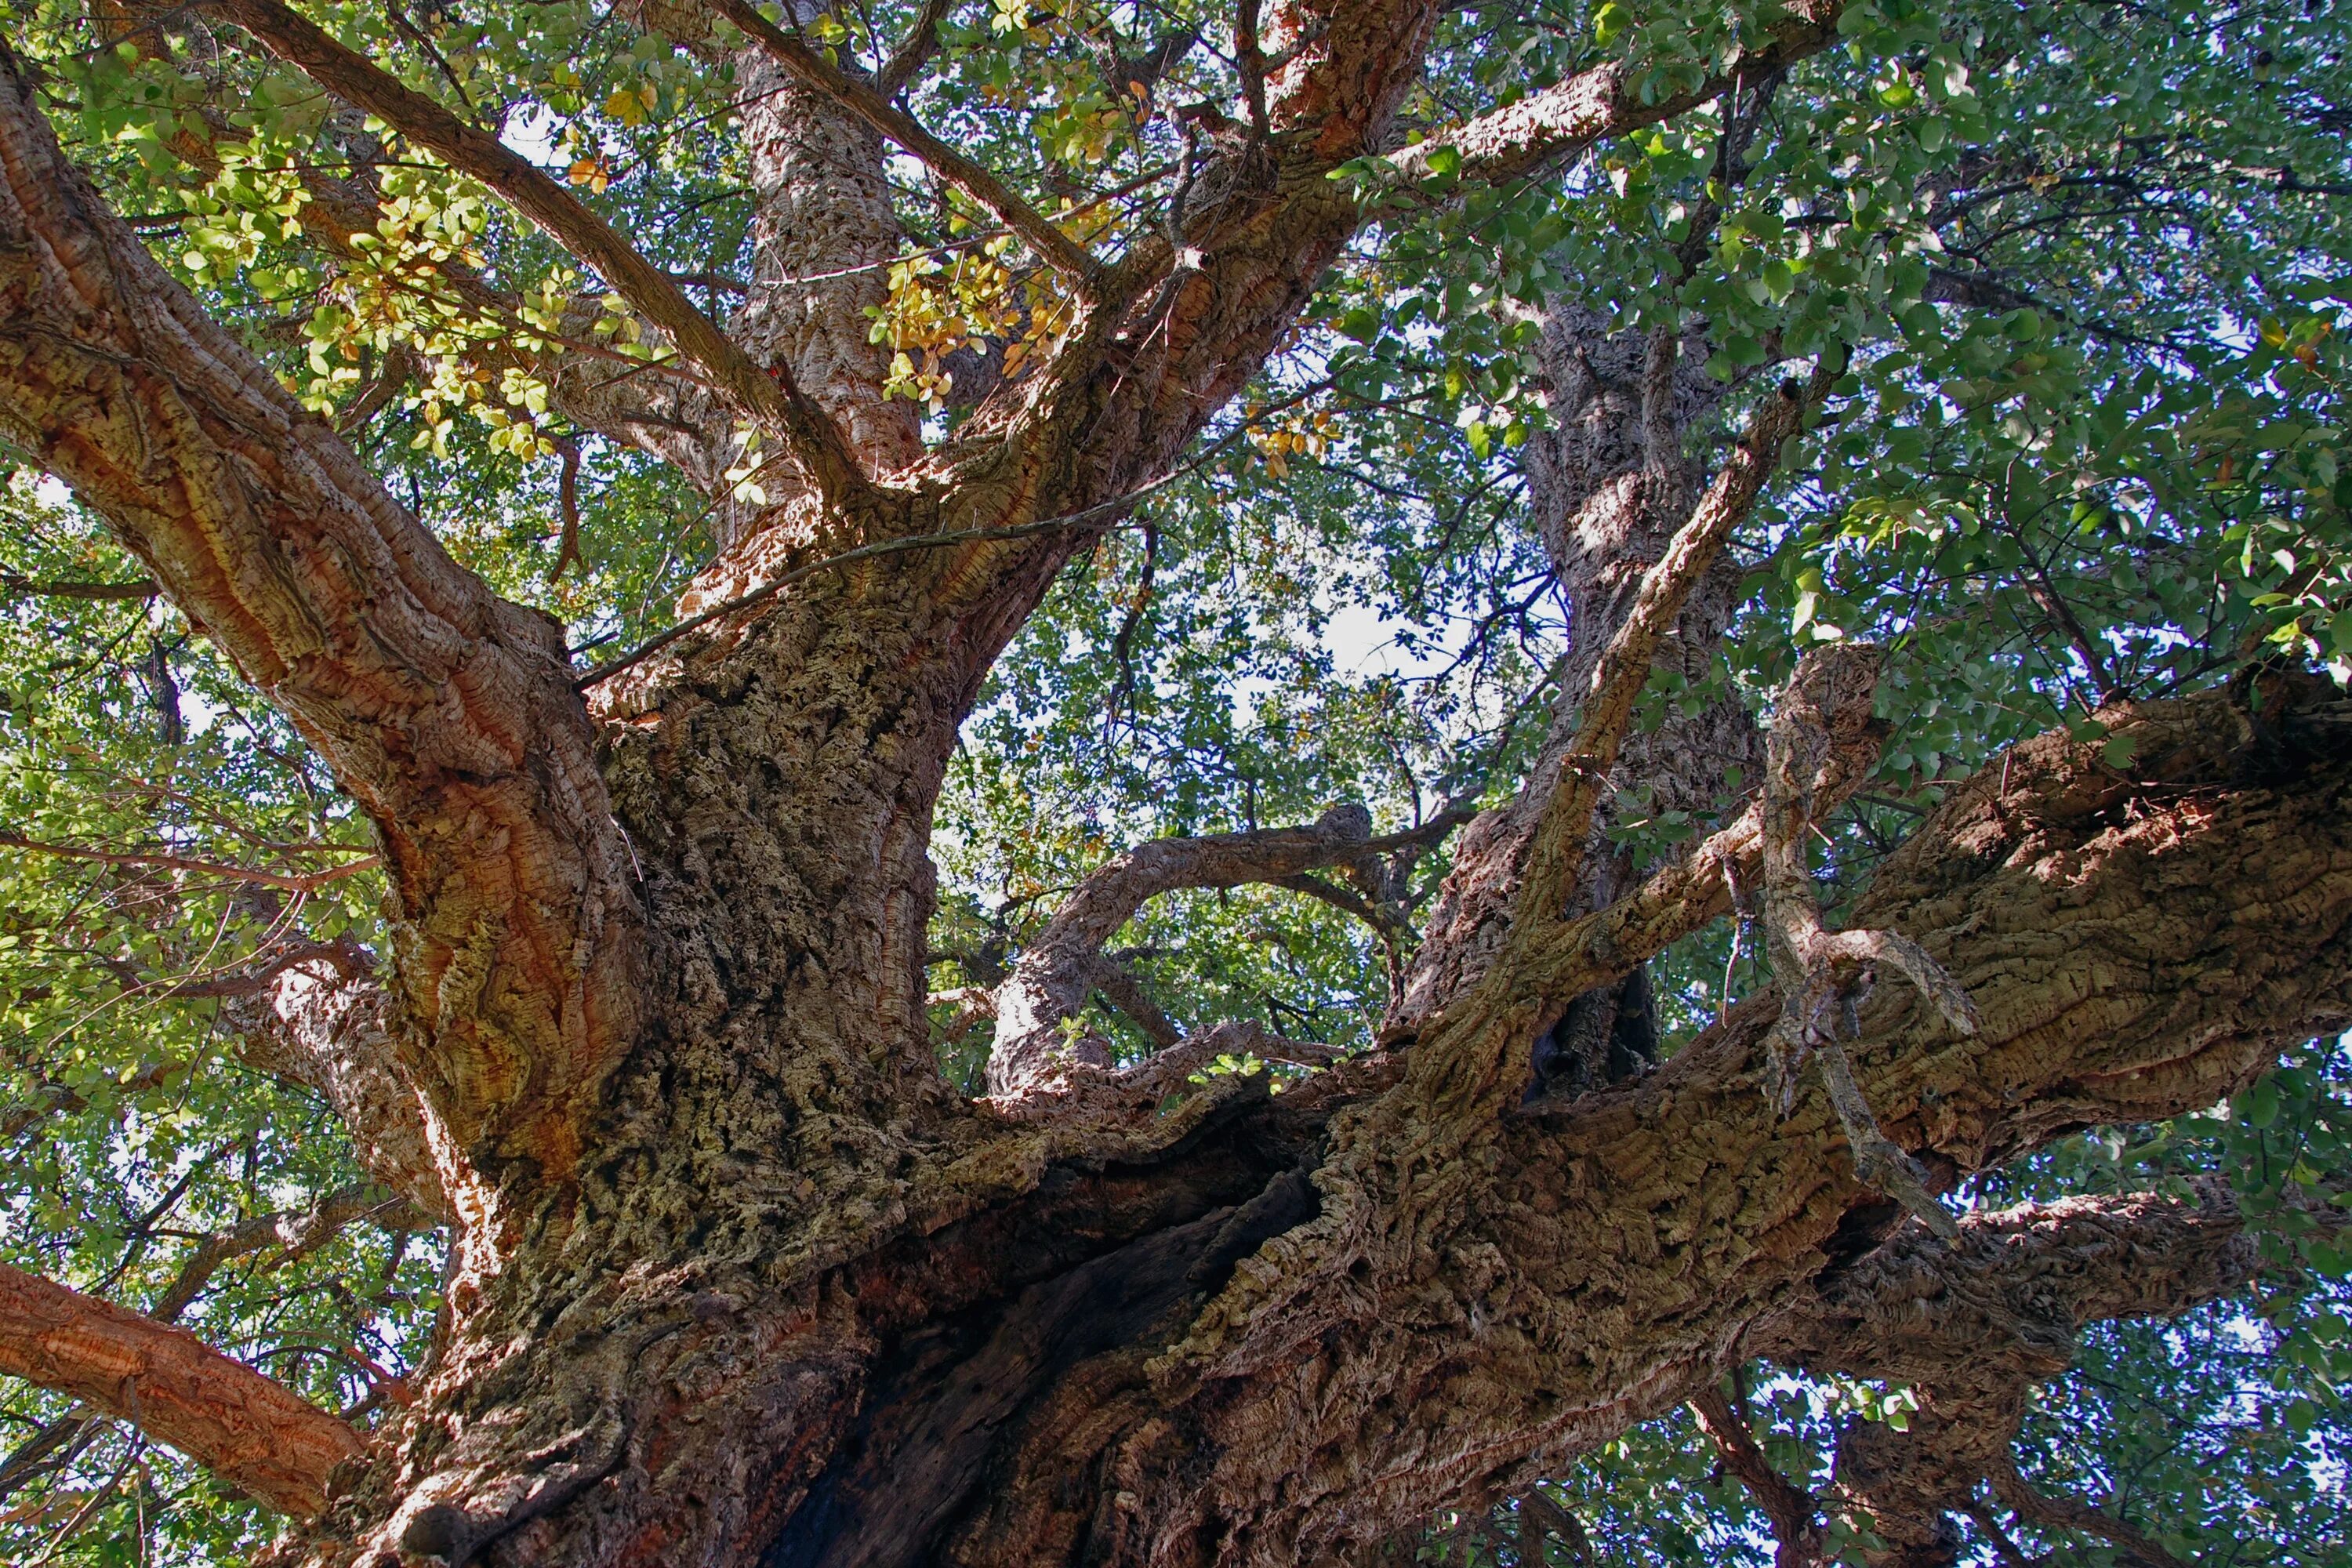 Quercus дуб пробковый. Дуб Пиренейский дерево. Пробковый дуб в Алжире. Толстая ветка дерева